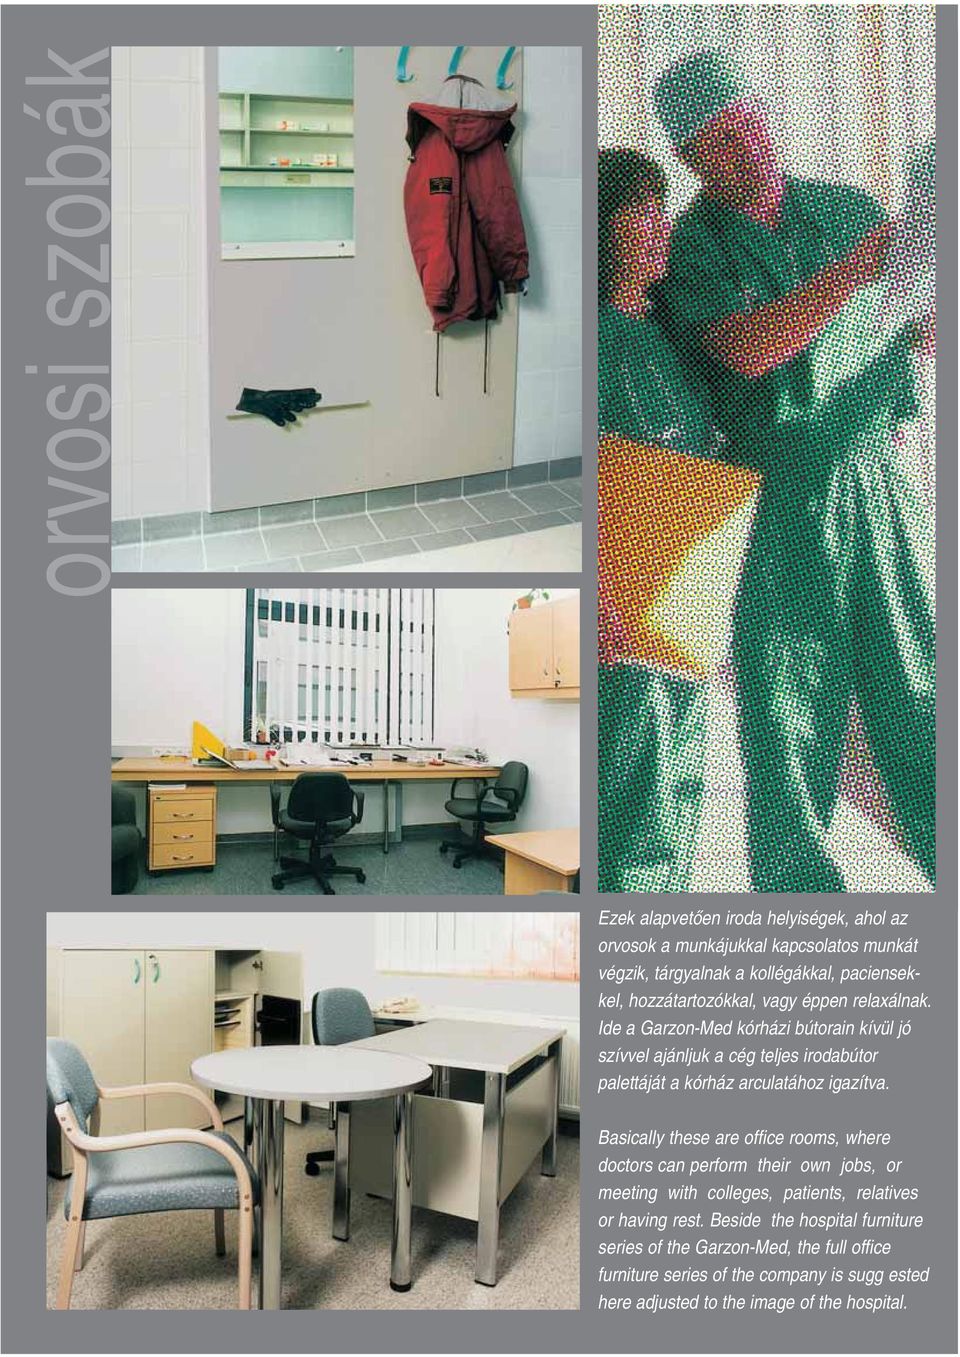 Ide a Garzon-Med kórházi bútorain kívül jó szívvel ajánljuk a cég teljes irodabútor palettáját a kórház arculatához igazítva.